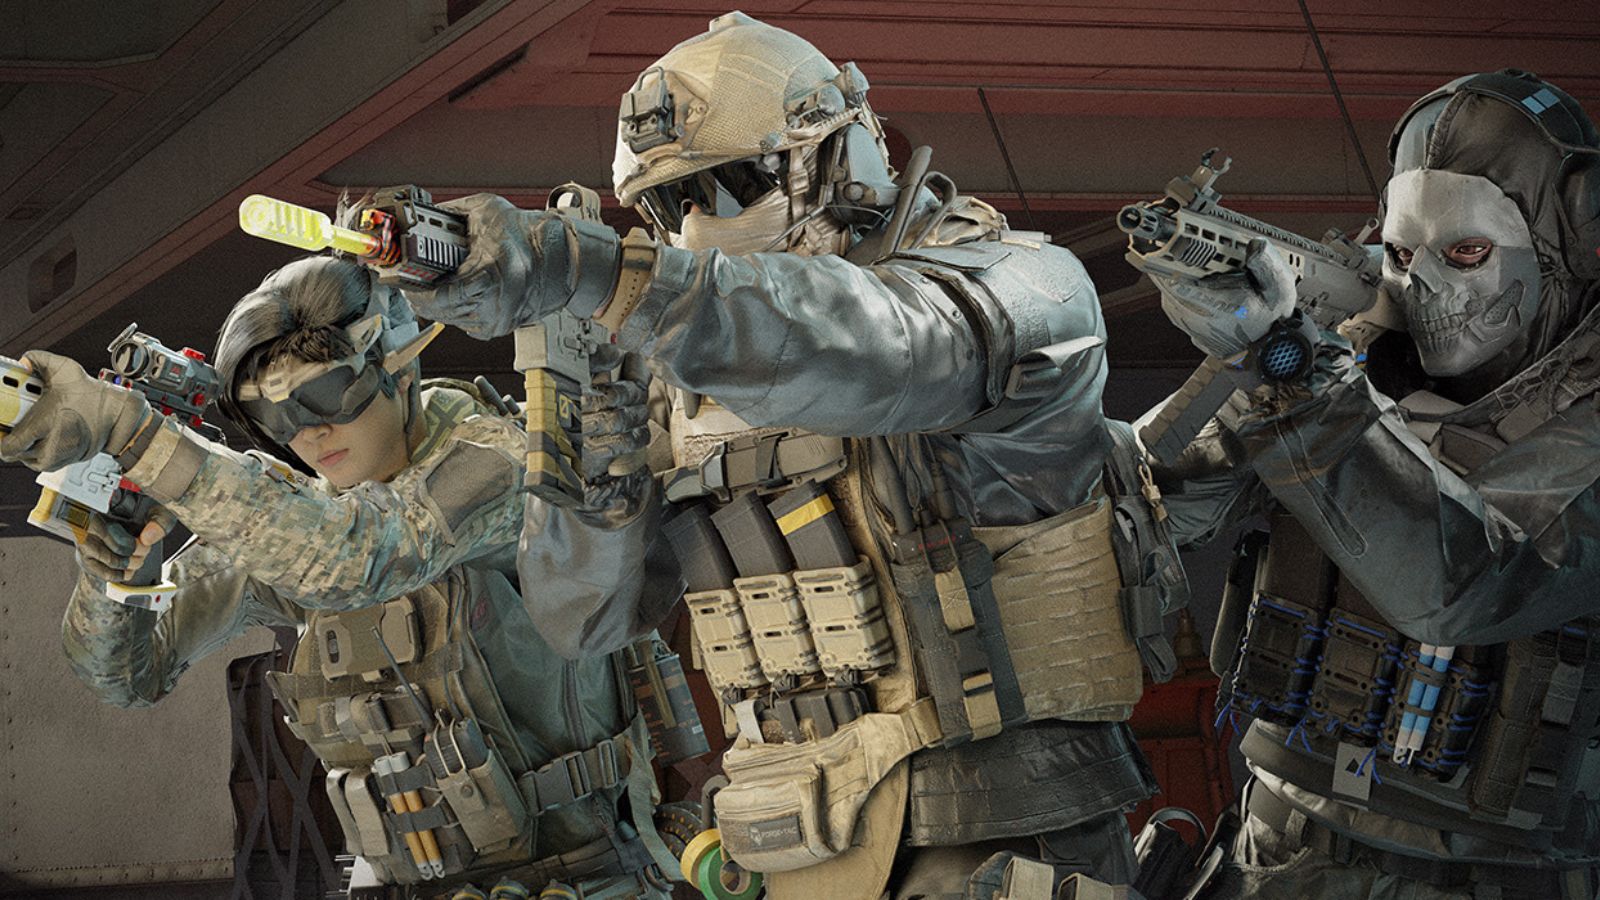 23 000 oszustów w Call of Duty zostało zablokowanych w ramach programu przeciwdziałającego oszustwom RICOCHET